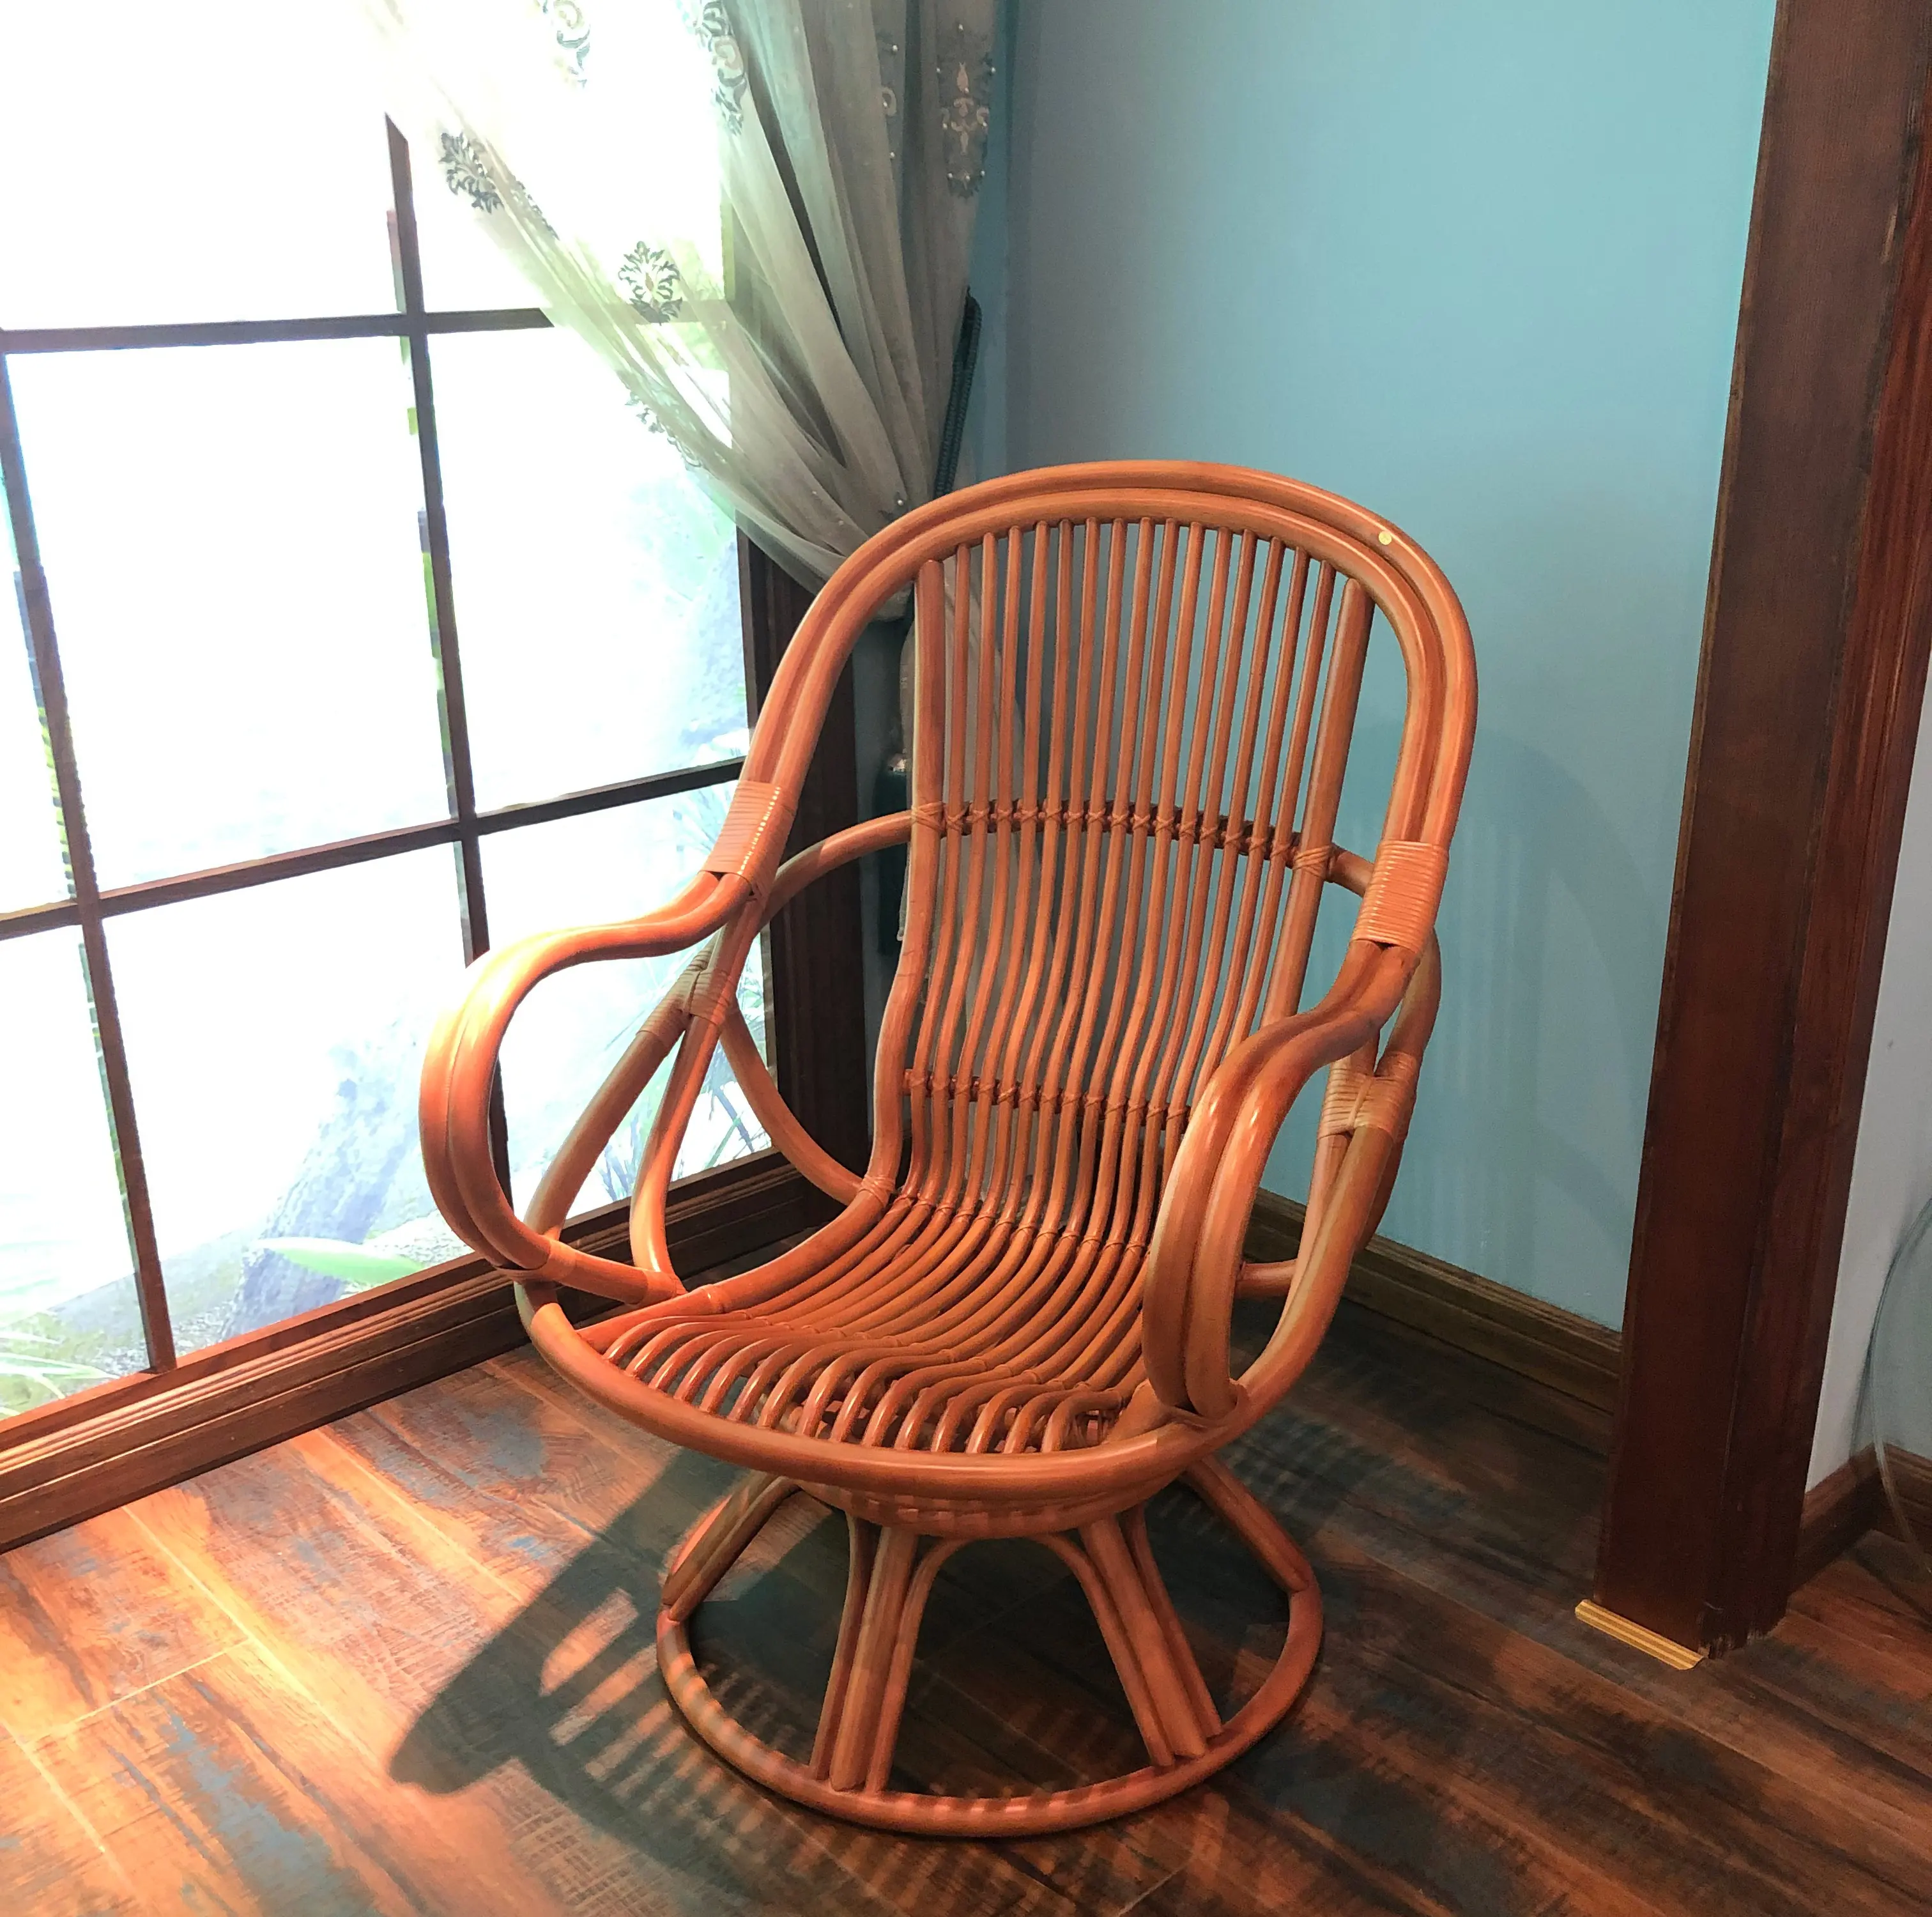 無形文化遺産伝統籐手作りバルコニー回転椅子アームレストリクライニングチェアリビングルーム寝室レジャーチェア